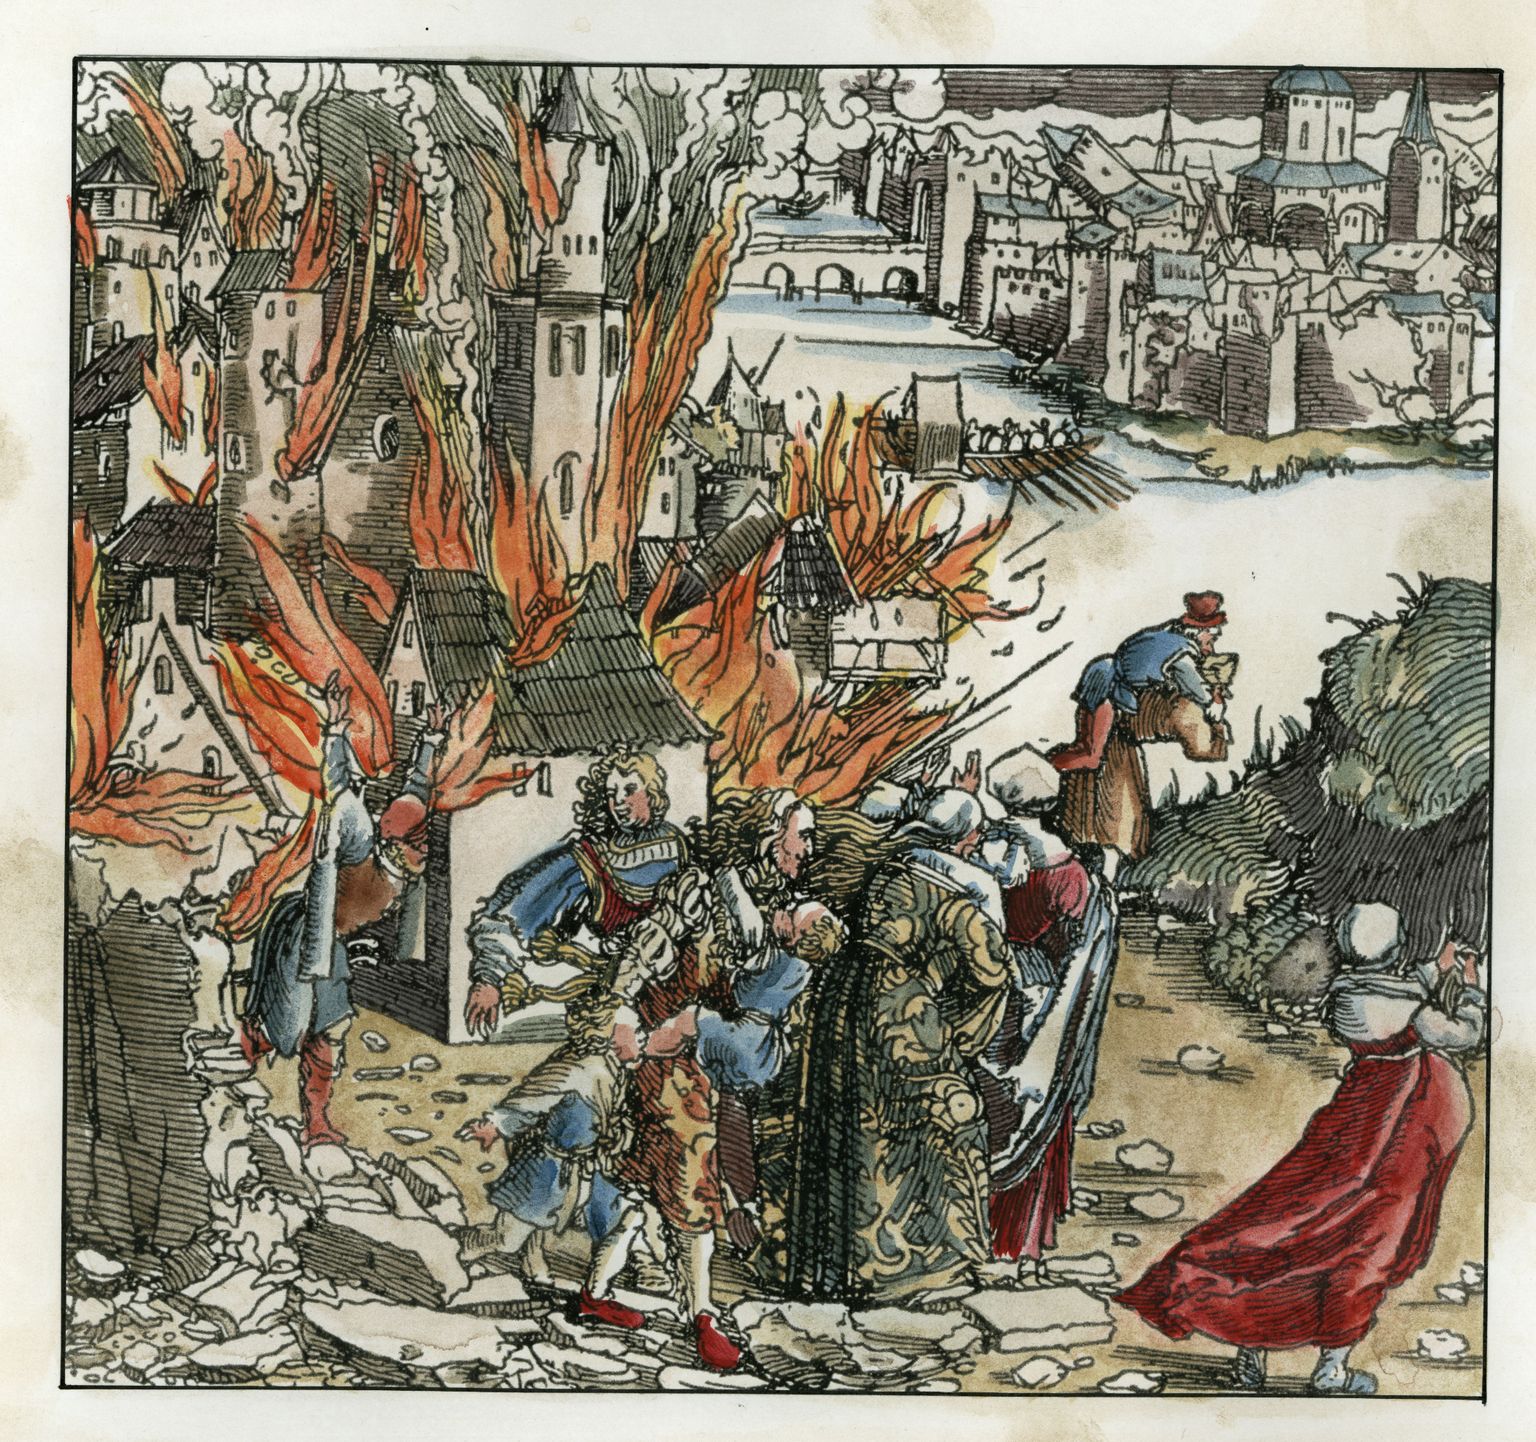 1578. aasta esimesel juunil põletasid Ivo Schenkenbergi juhitud eestlaste väed maha Tartu venelaste eeslinna.